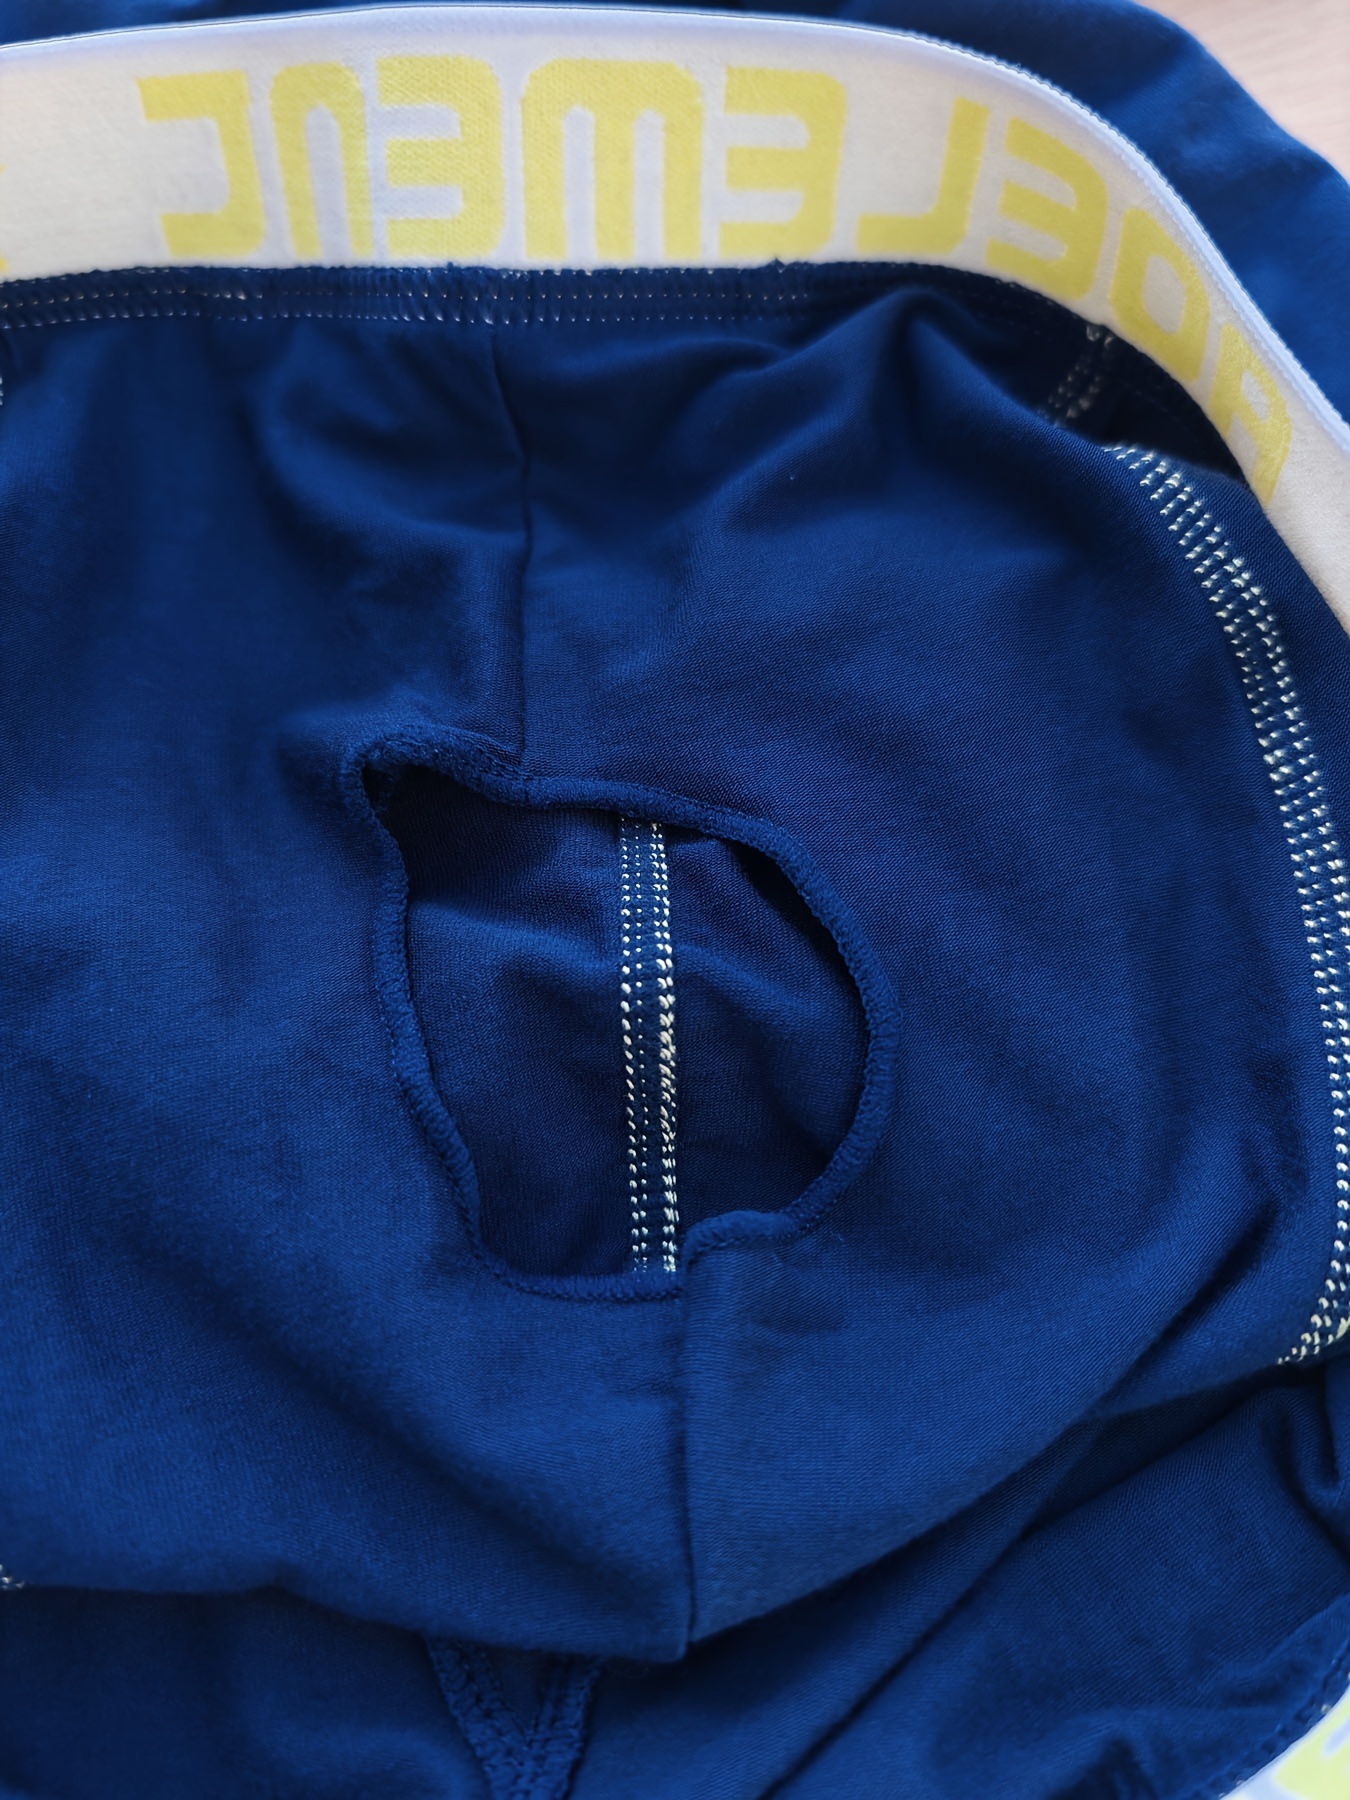 Calzoncillos largos termicos para hombres con abertura color azul marino en  tallas 5-9 de AMMANN